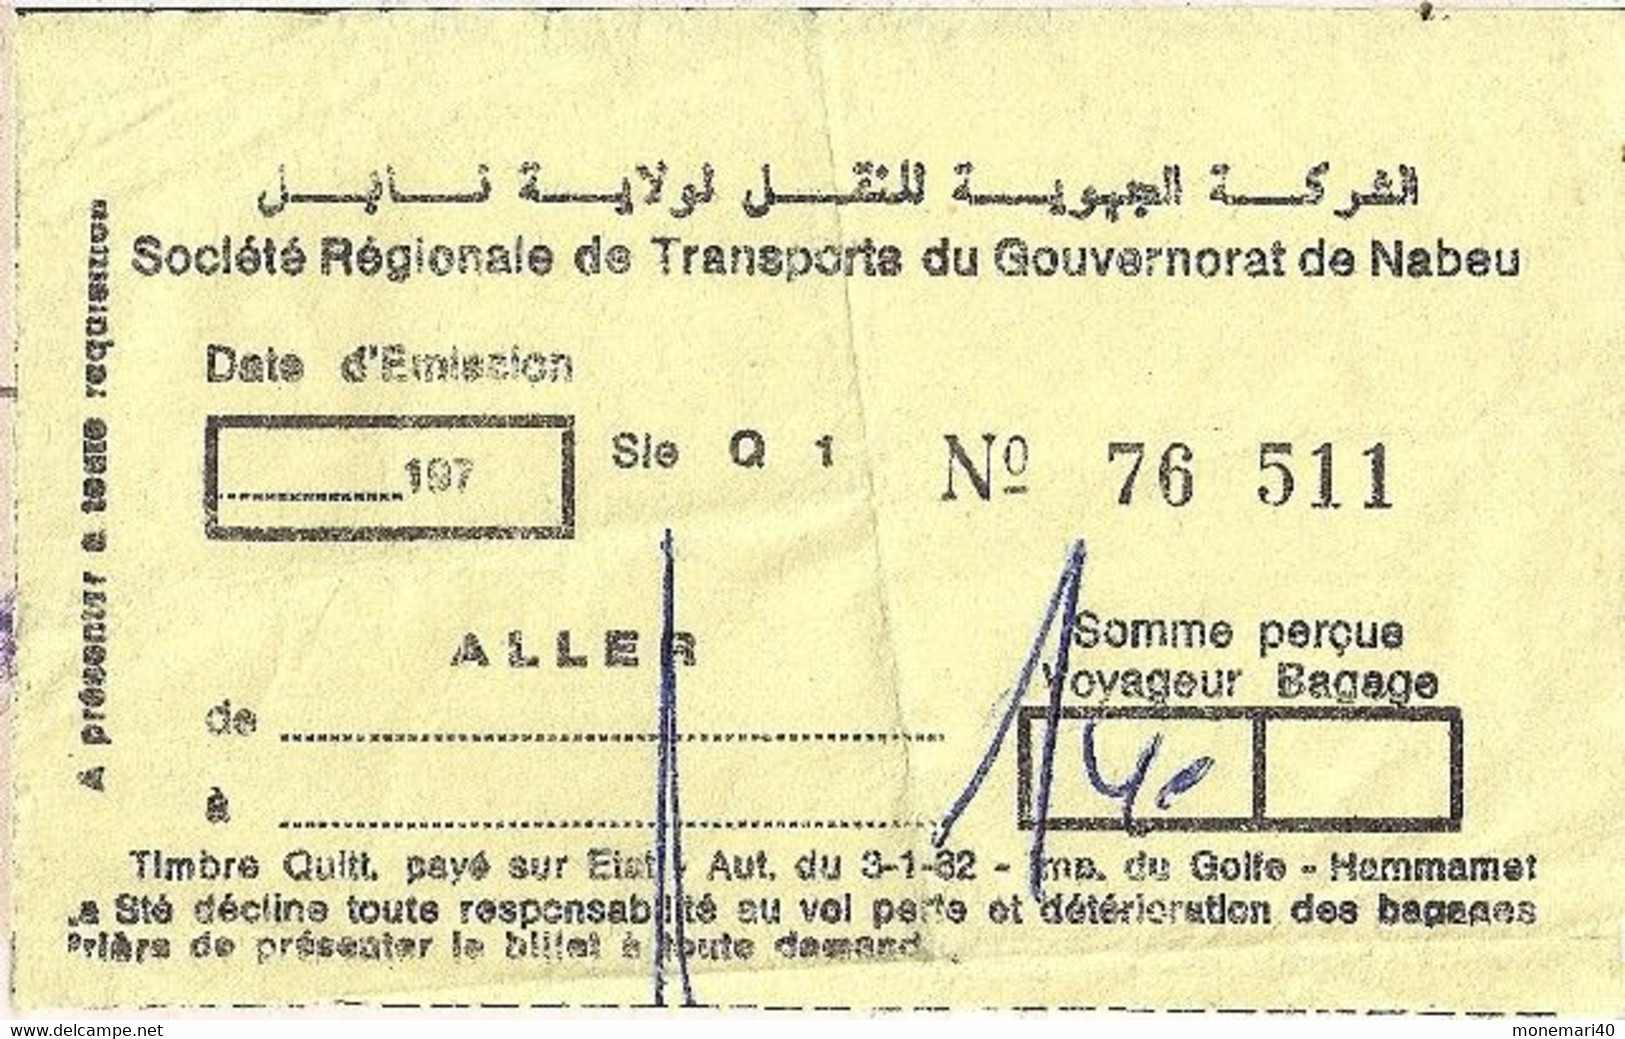 TUNISIE - SOCIÉTÉ RÉGIONALE DE TRANSPORTS DU GOUVERNORAT DE NABEU - World